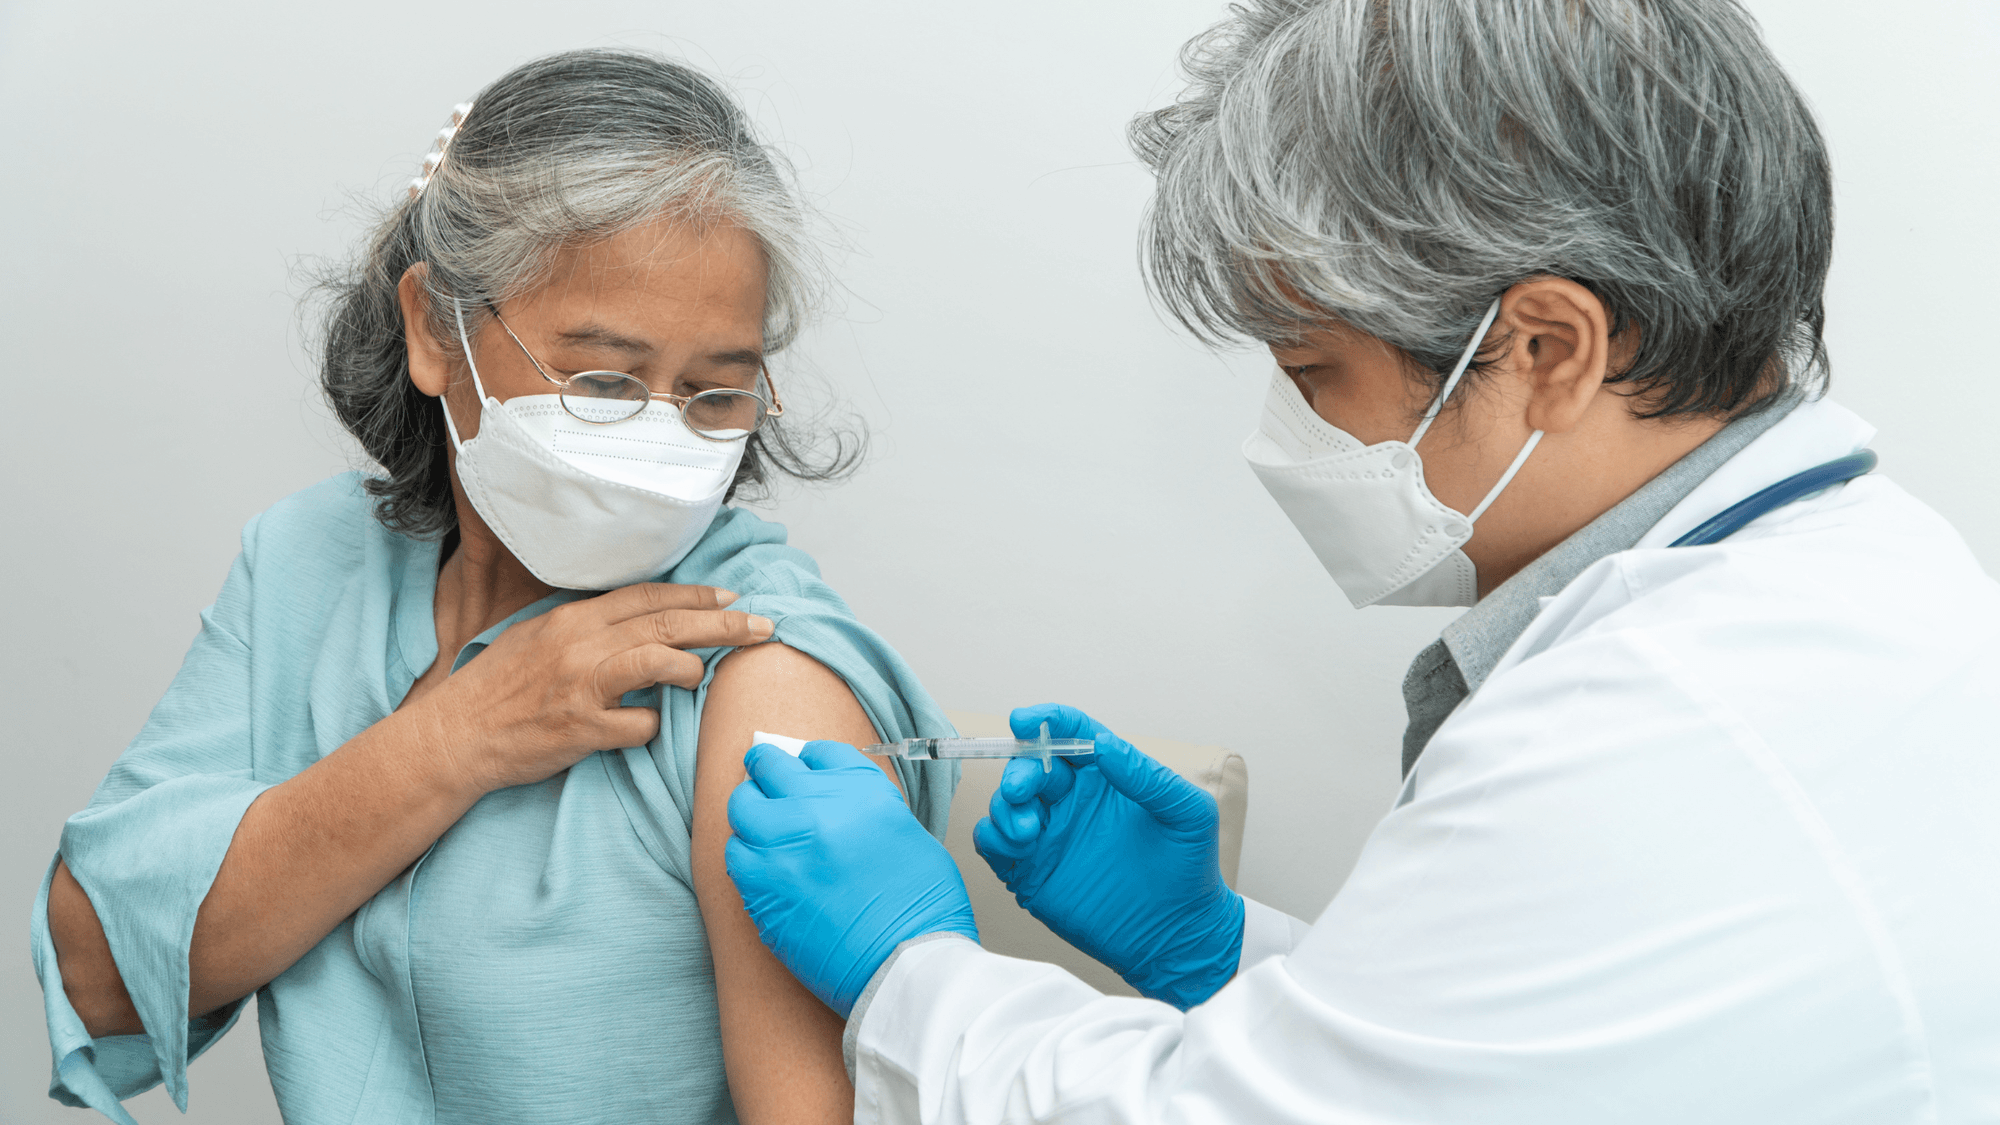 Preguntas frecuentes | Todo lo que hay que saber sobre la vacuna contra el COVID-19 cover